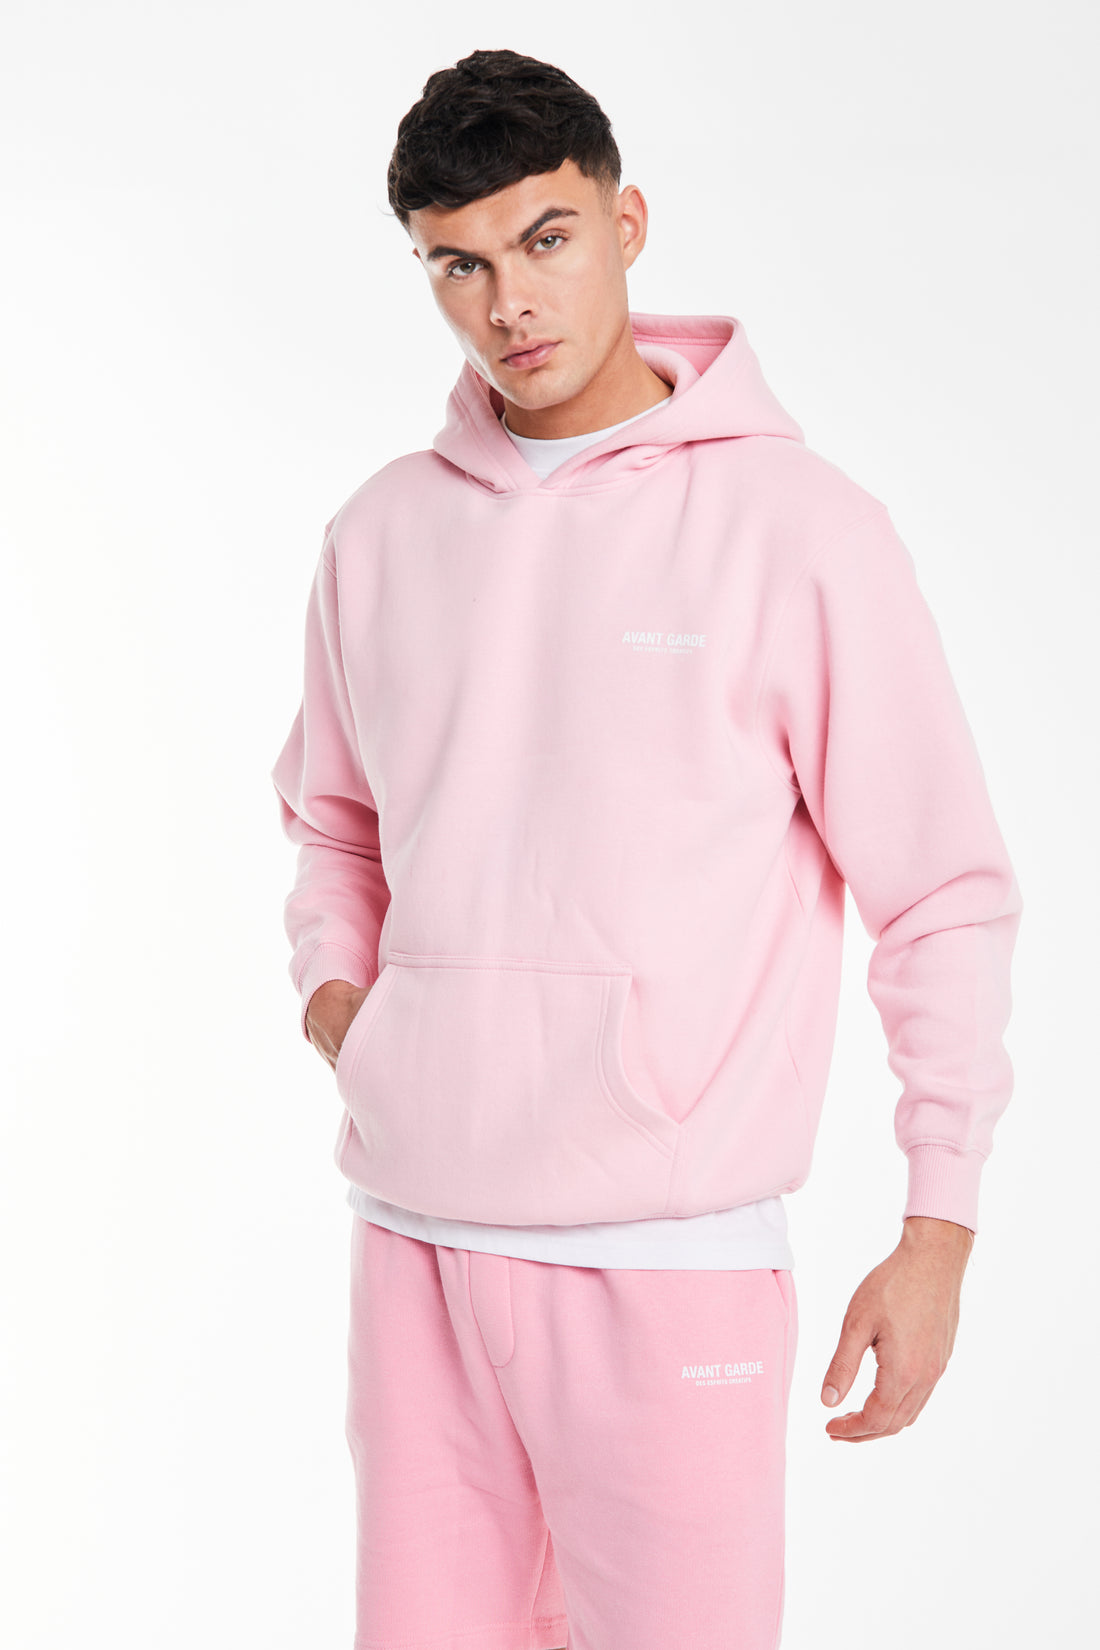 soft pink hoodie sale